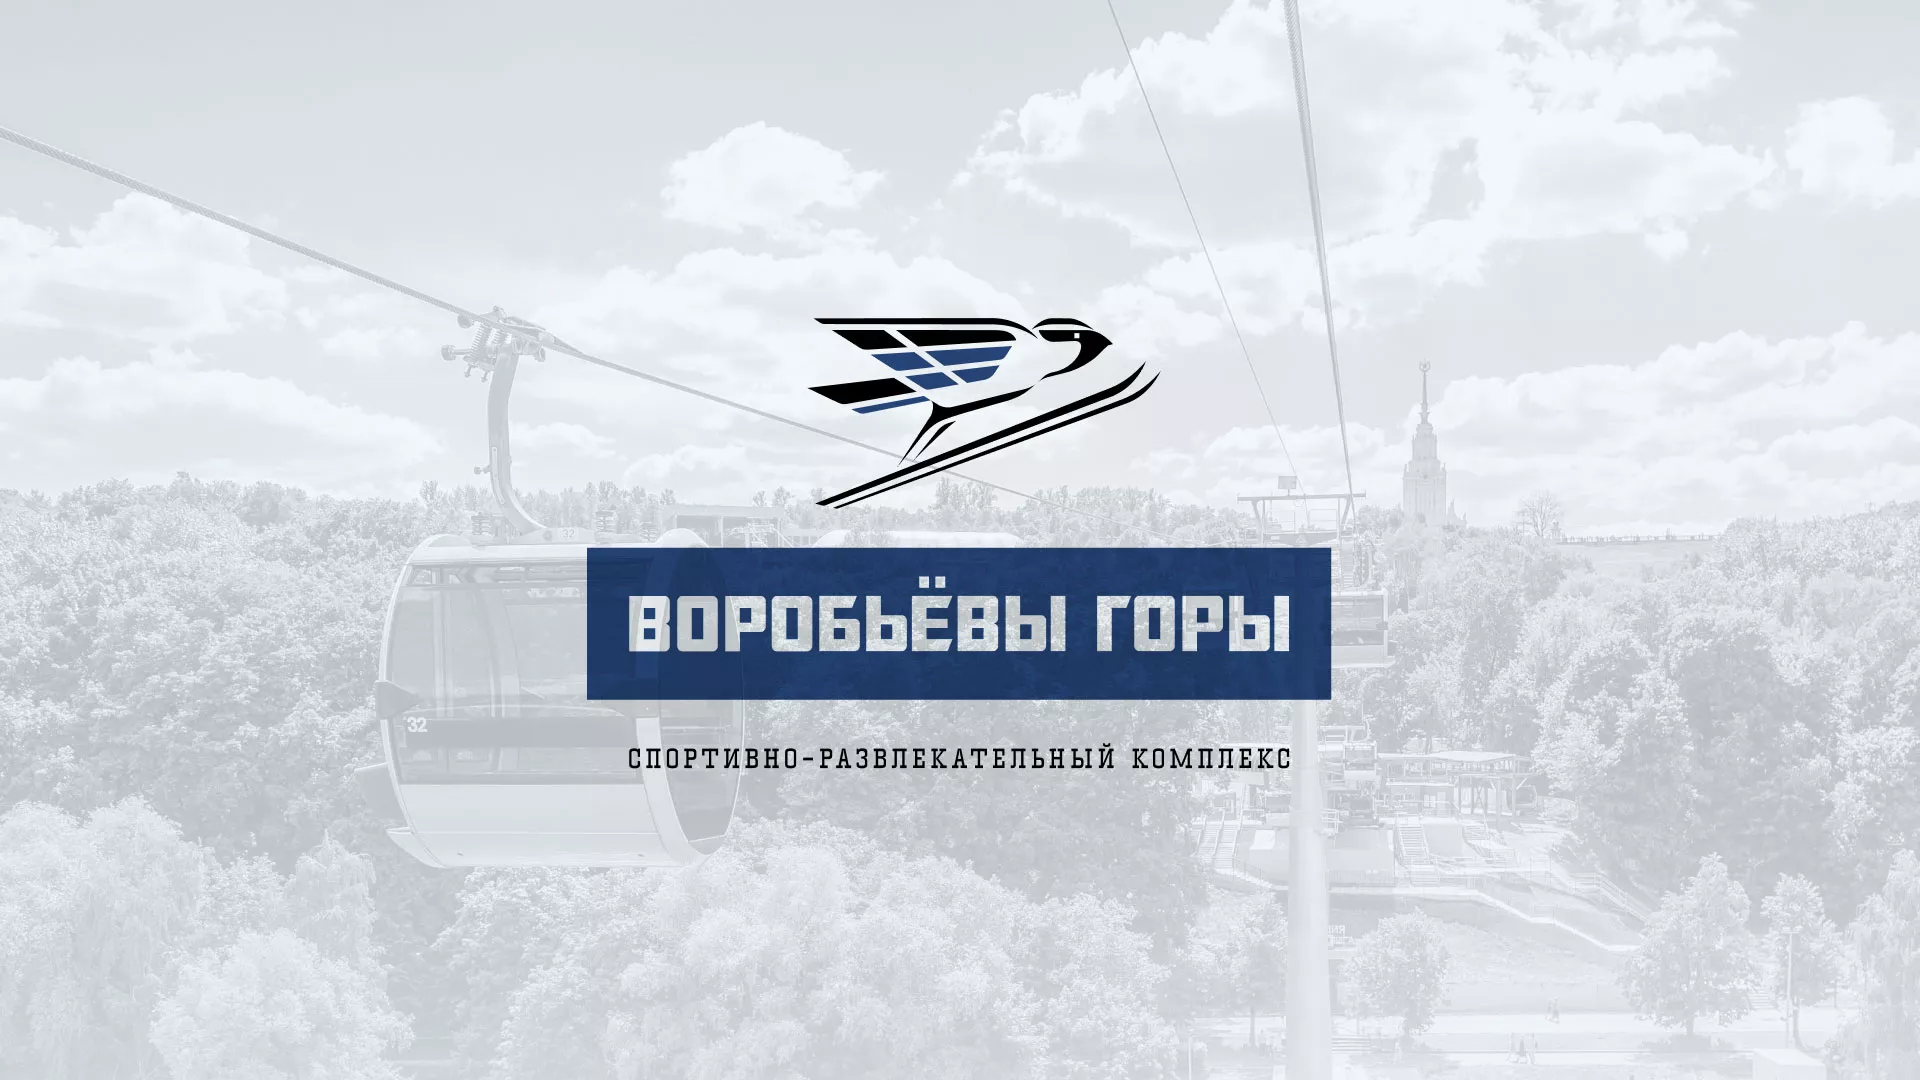 Разработка сайта в Карабаново для спортивно-развлекательного комплекса «Воробьёвы горы»